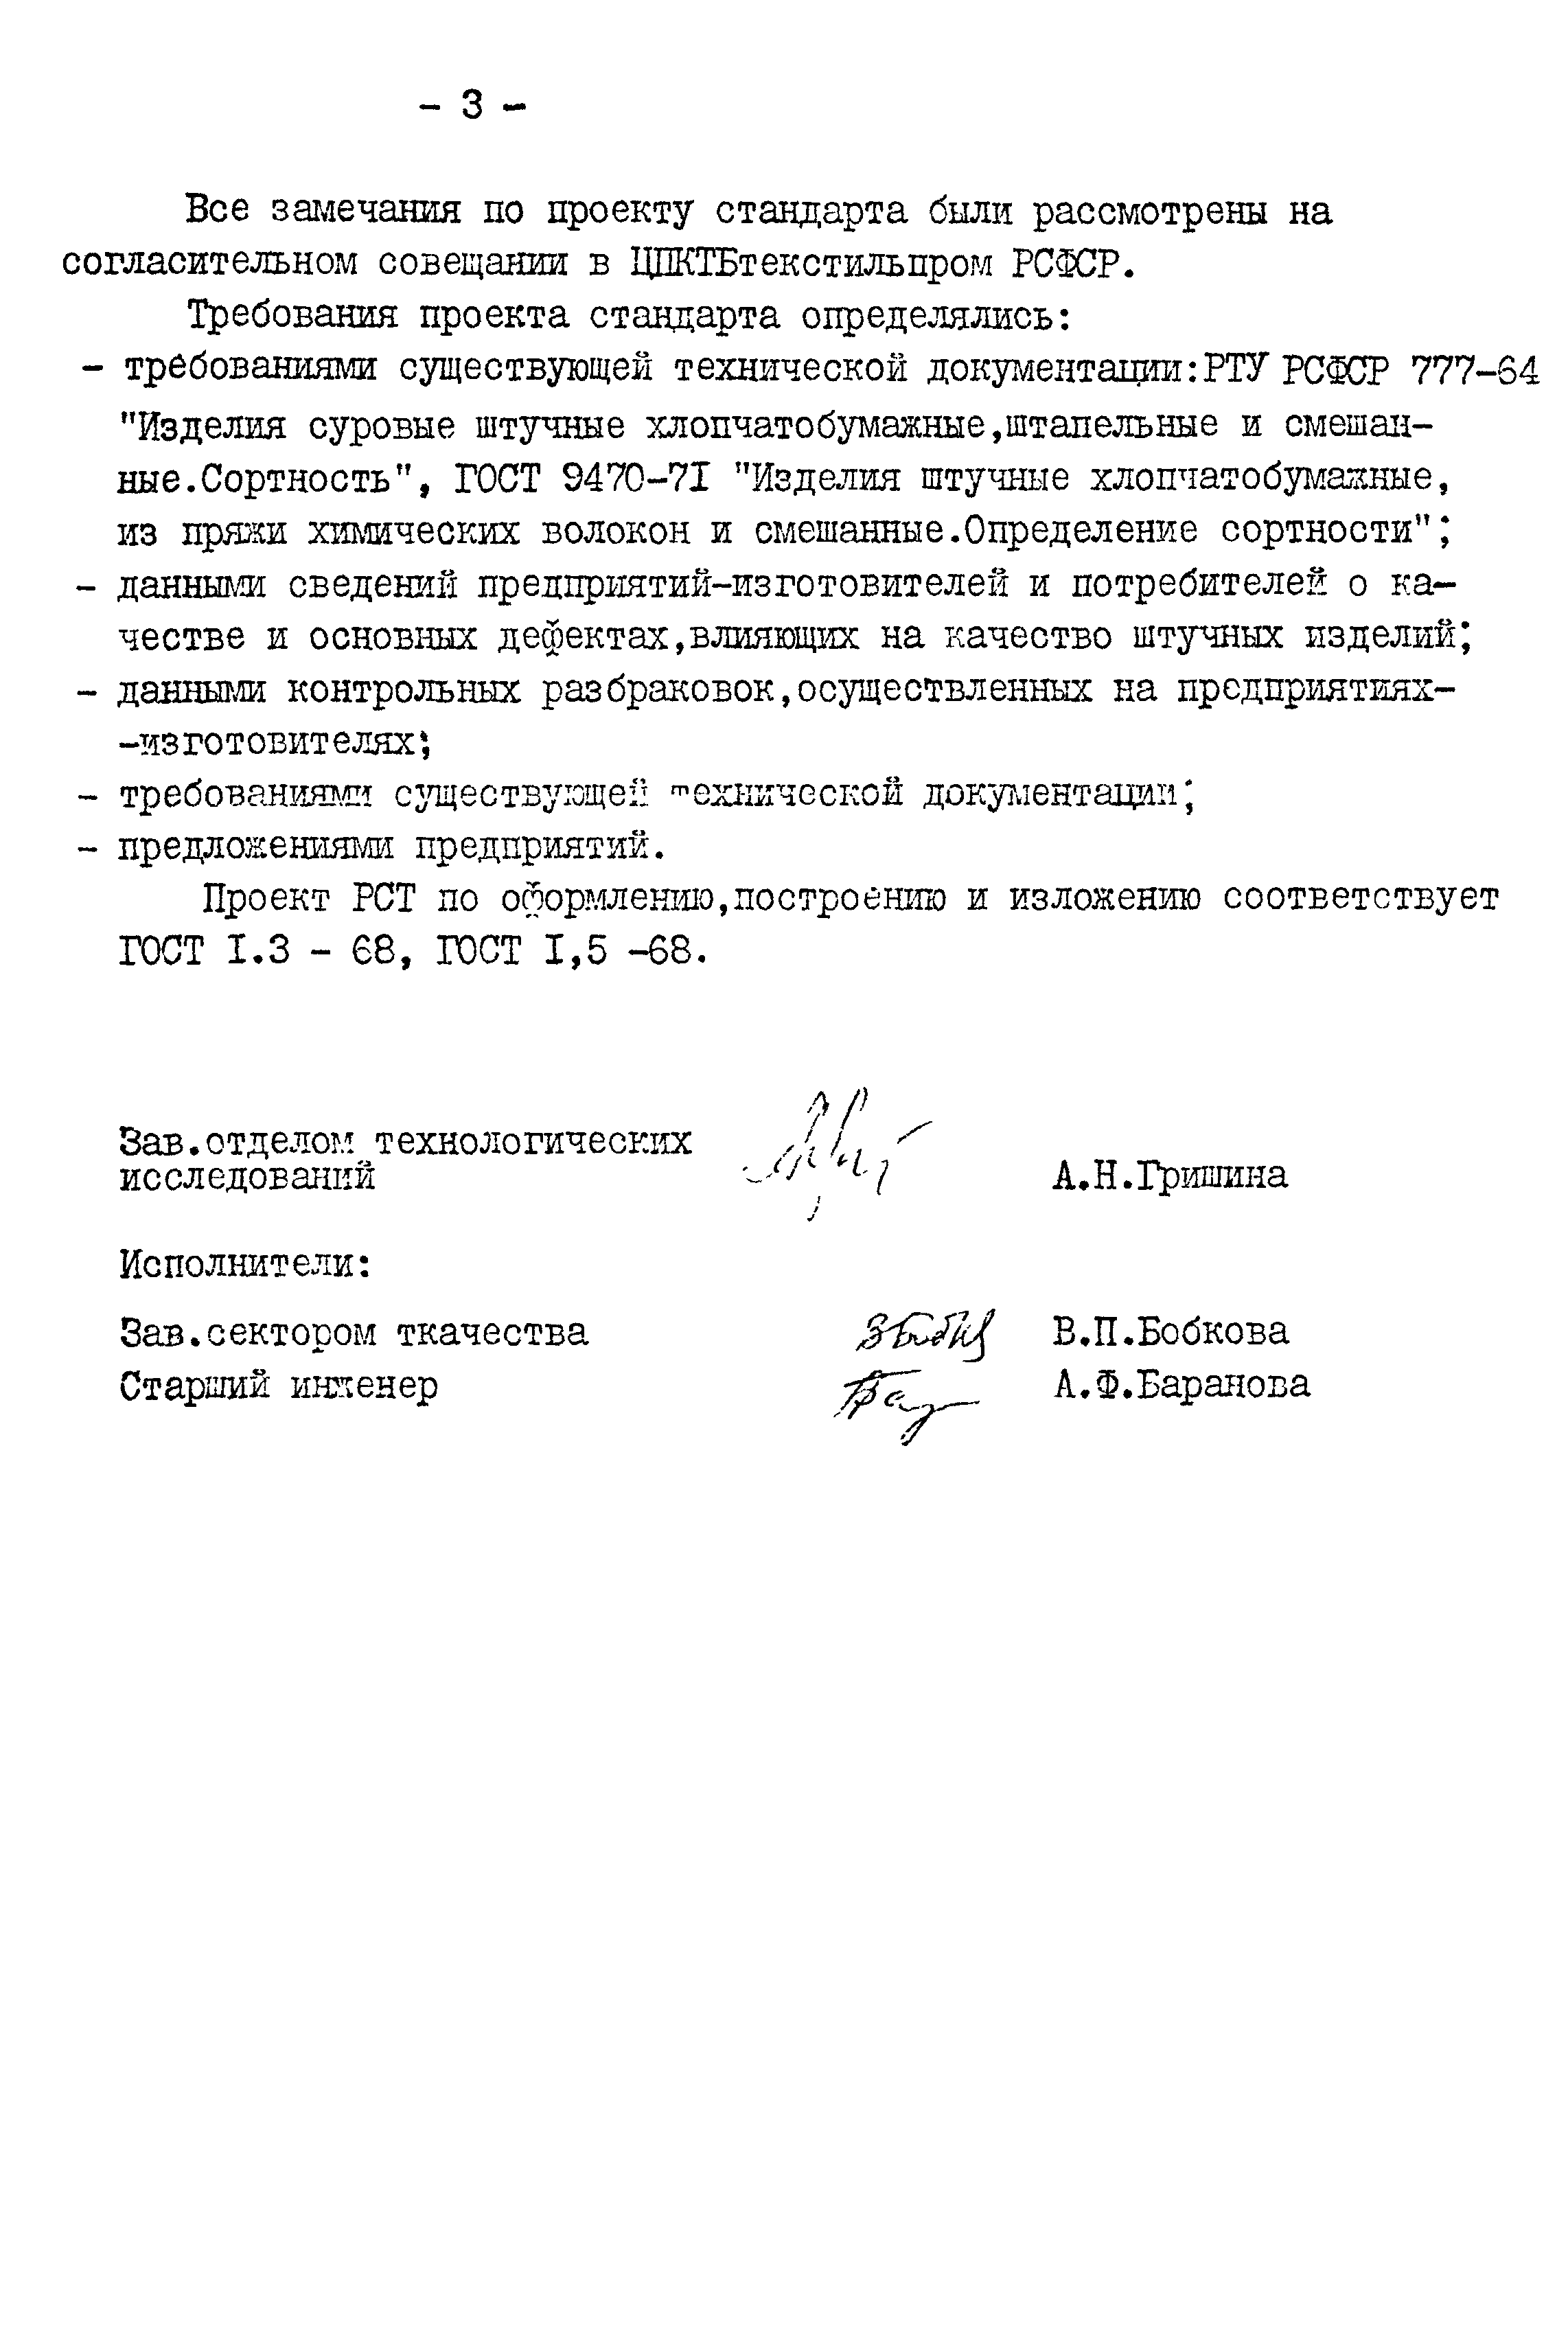 РСТ РСФСР 599-78